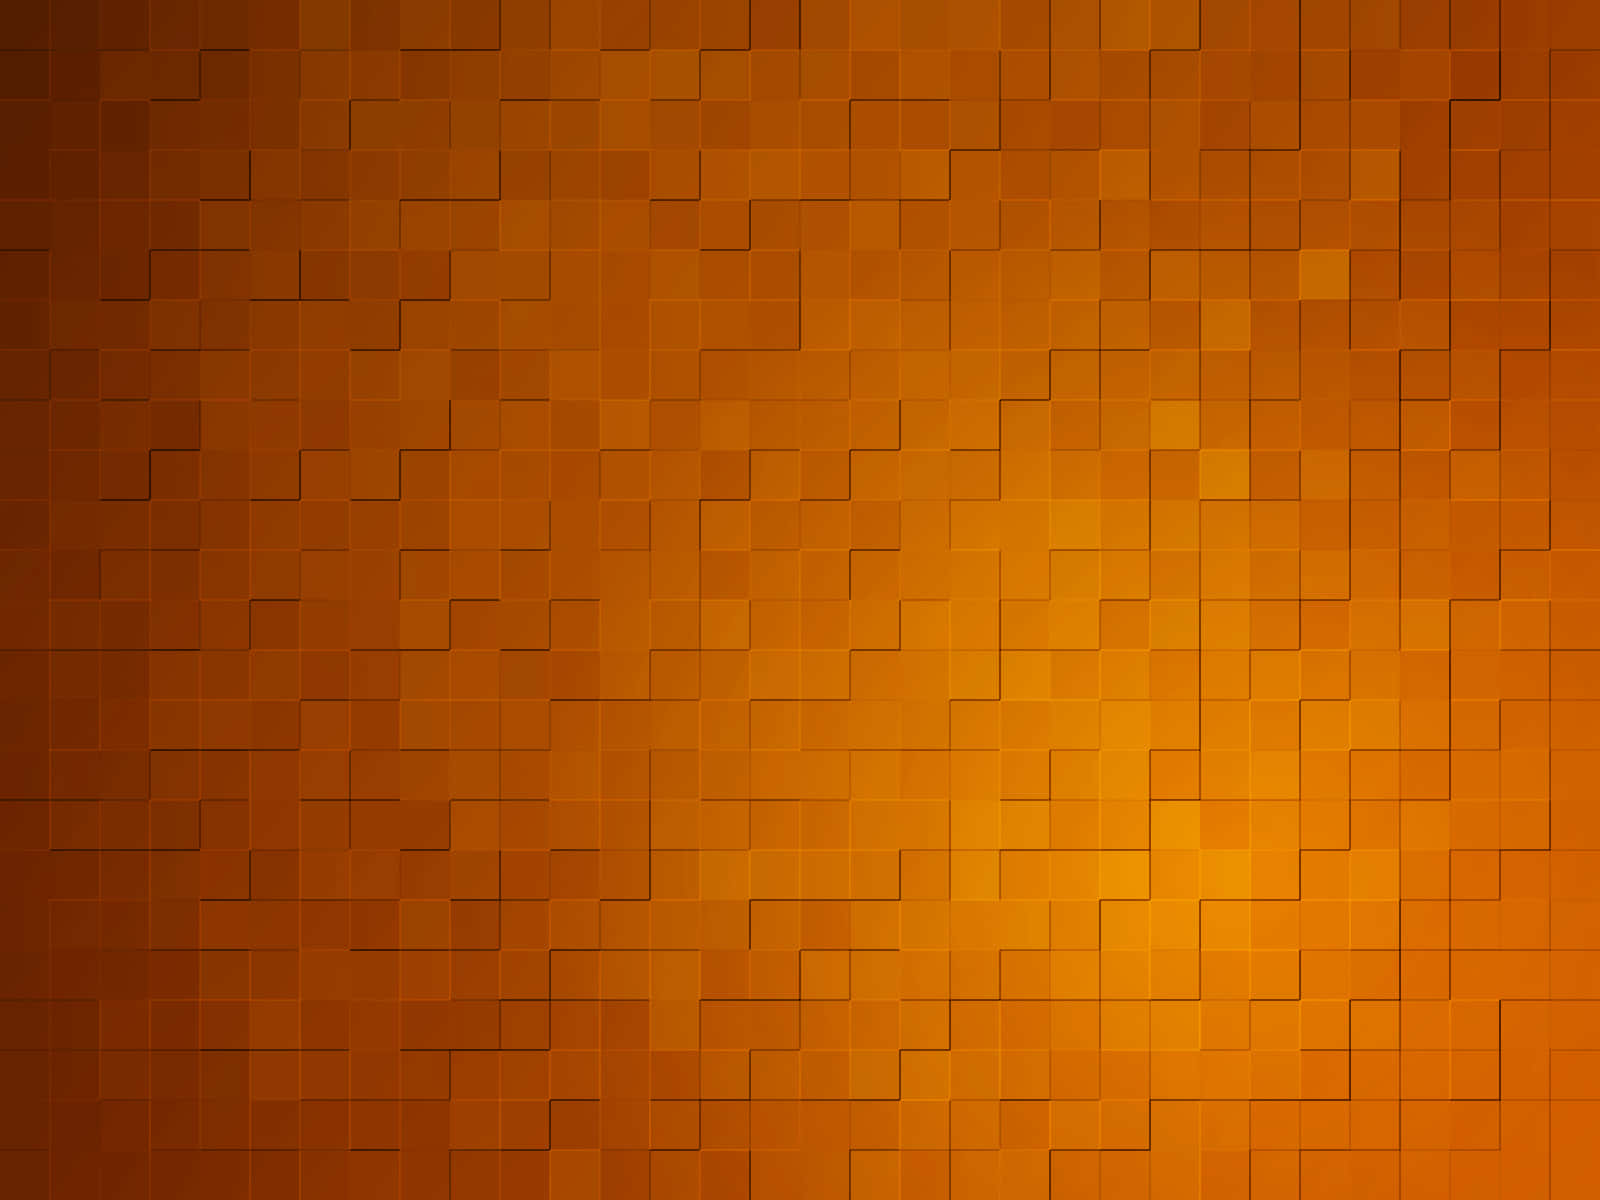 Mini Cubes In Orange Background